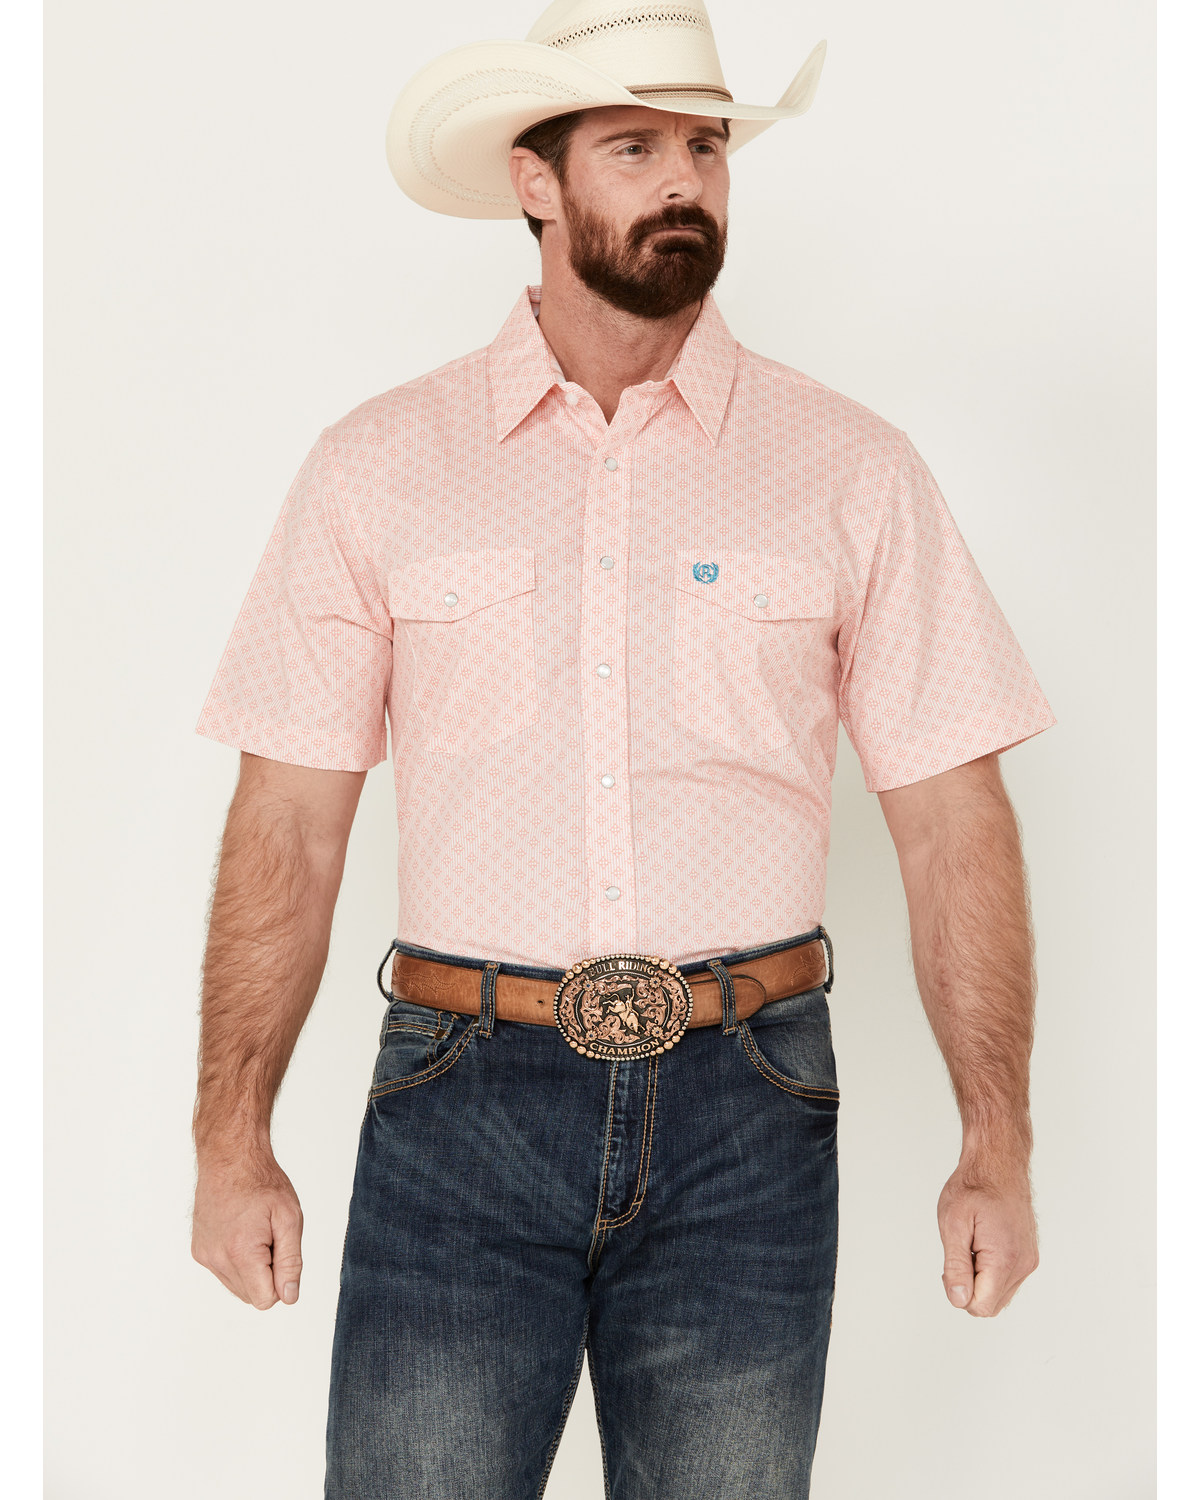 Panhandle Men's Geo Print Short Sleeve Pearl Snap Western Shirt